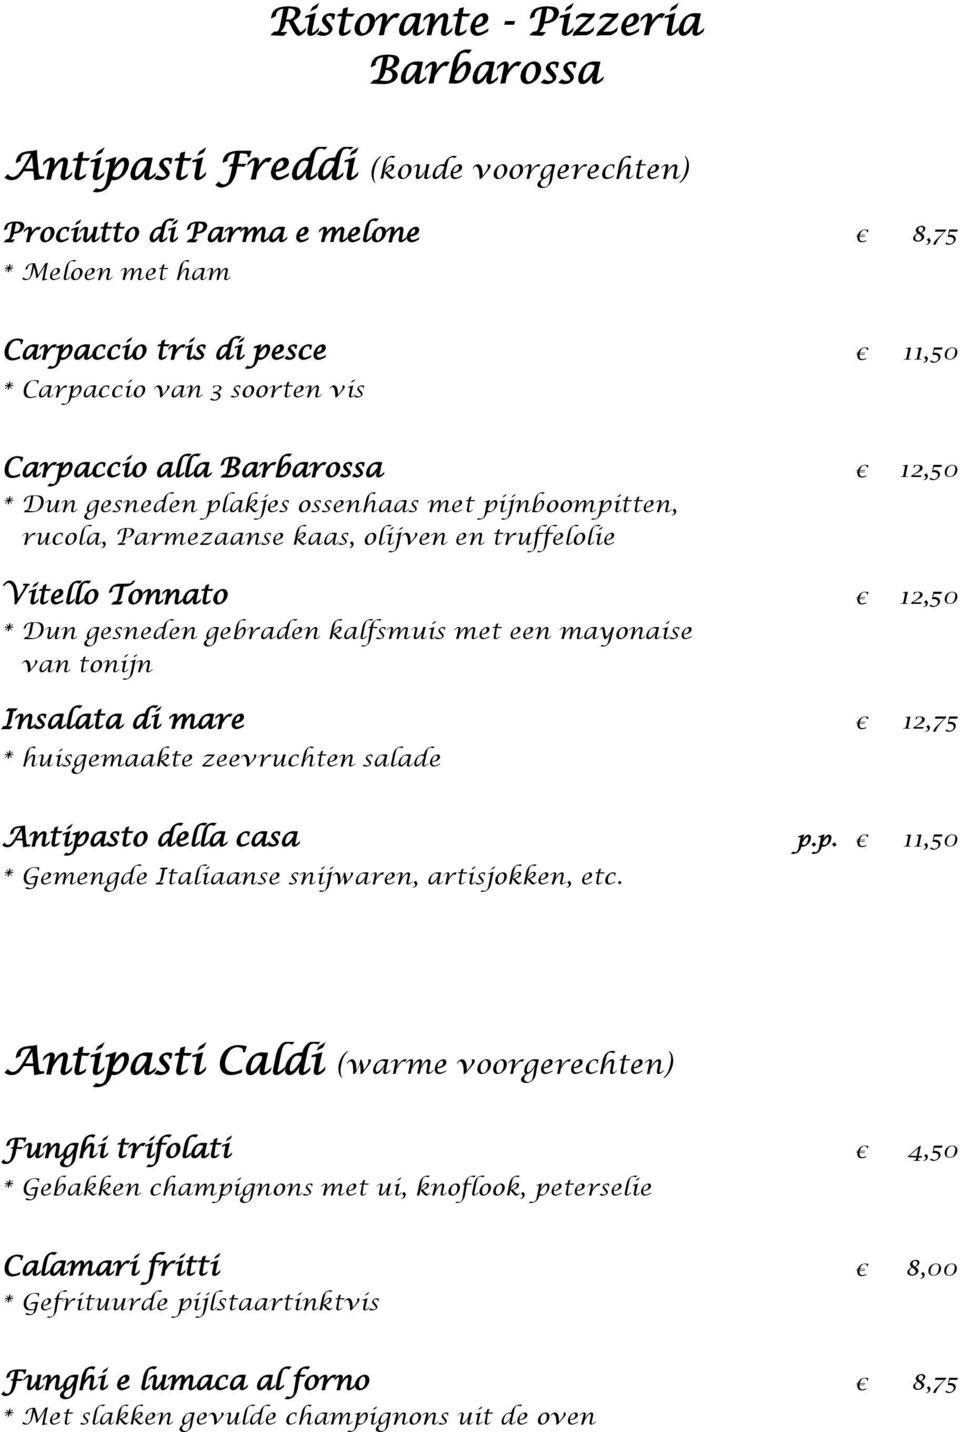 mare 12,75 * huisgemaakte zeevruchten salade Antipasto della casa p.p. 11,50 * Gemengde Italiaanse snijwaren, artisjokken, etc.